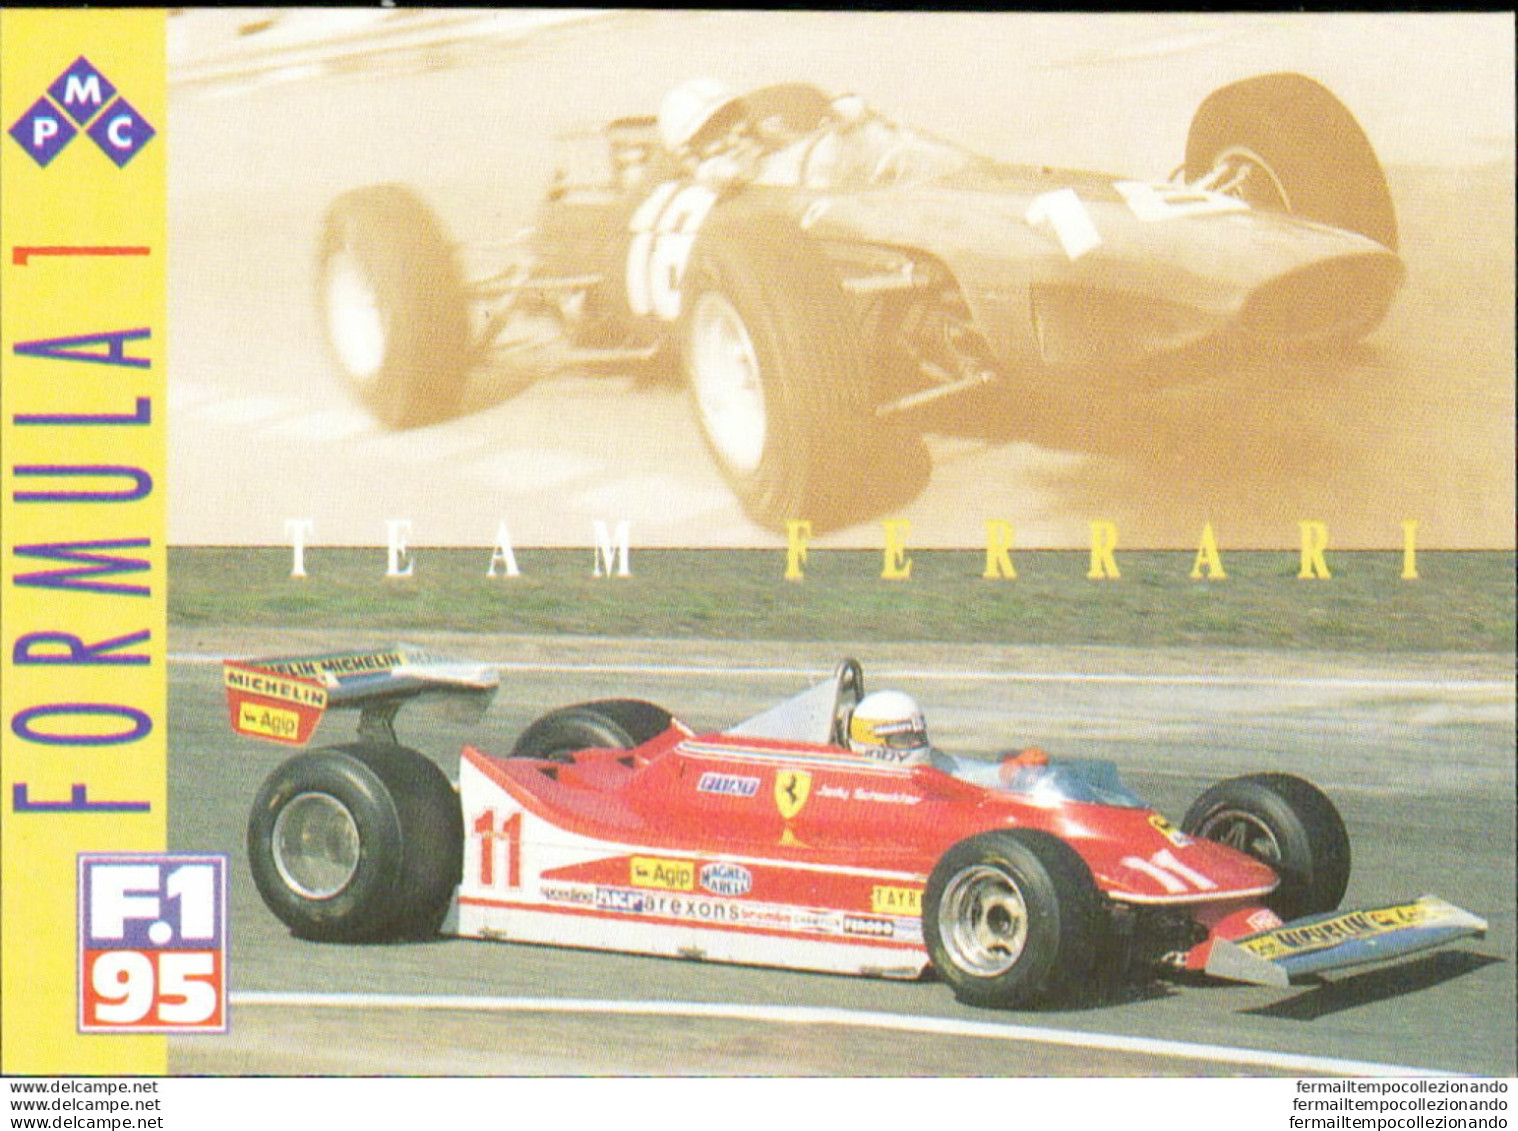 Bh49 1995 Formula 1 Gran Prix Collection Card Ferrari Team N 49 - Cataloghi